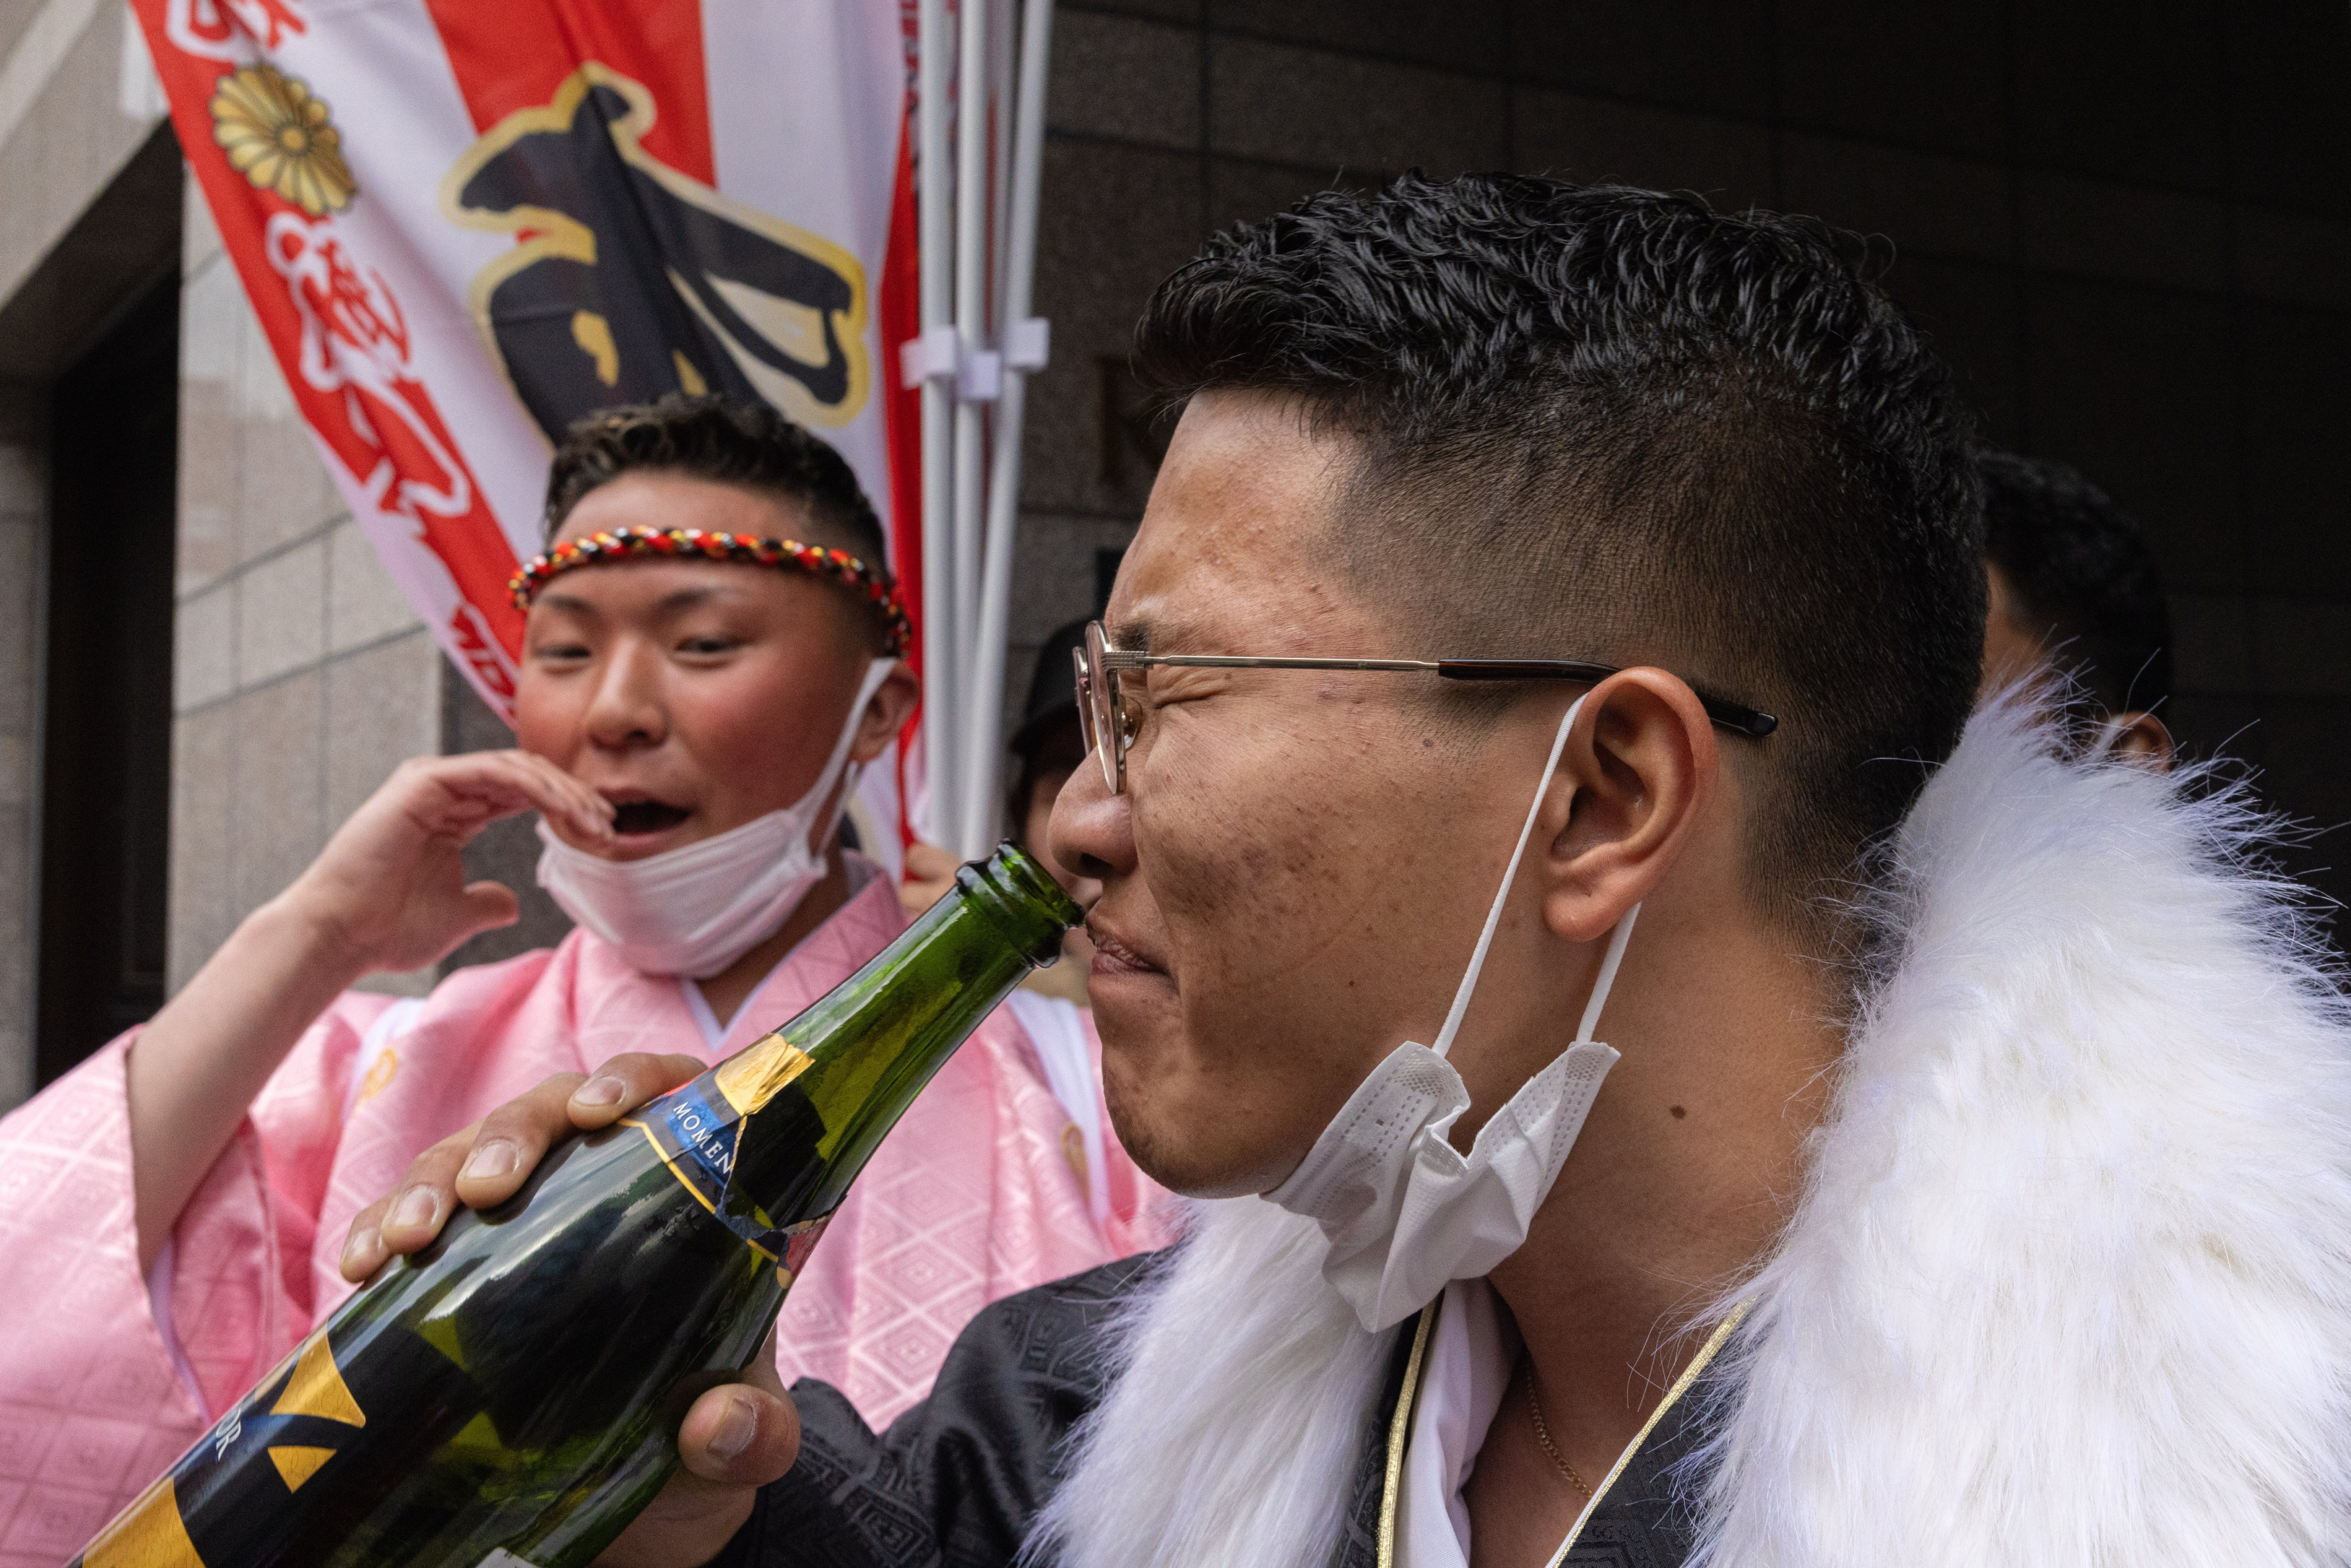 O Seijin no Hi no Japão, celebrado no dia 10 de Janeiro deste ano, pelos jovens adultos de 20 anos que atingem a idade adulta legal